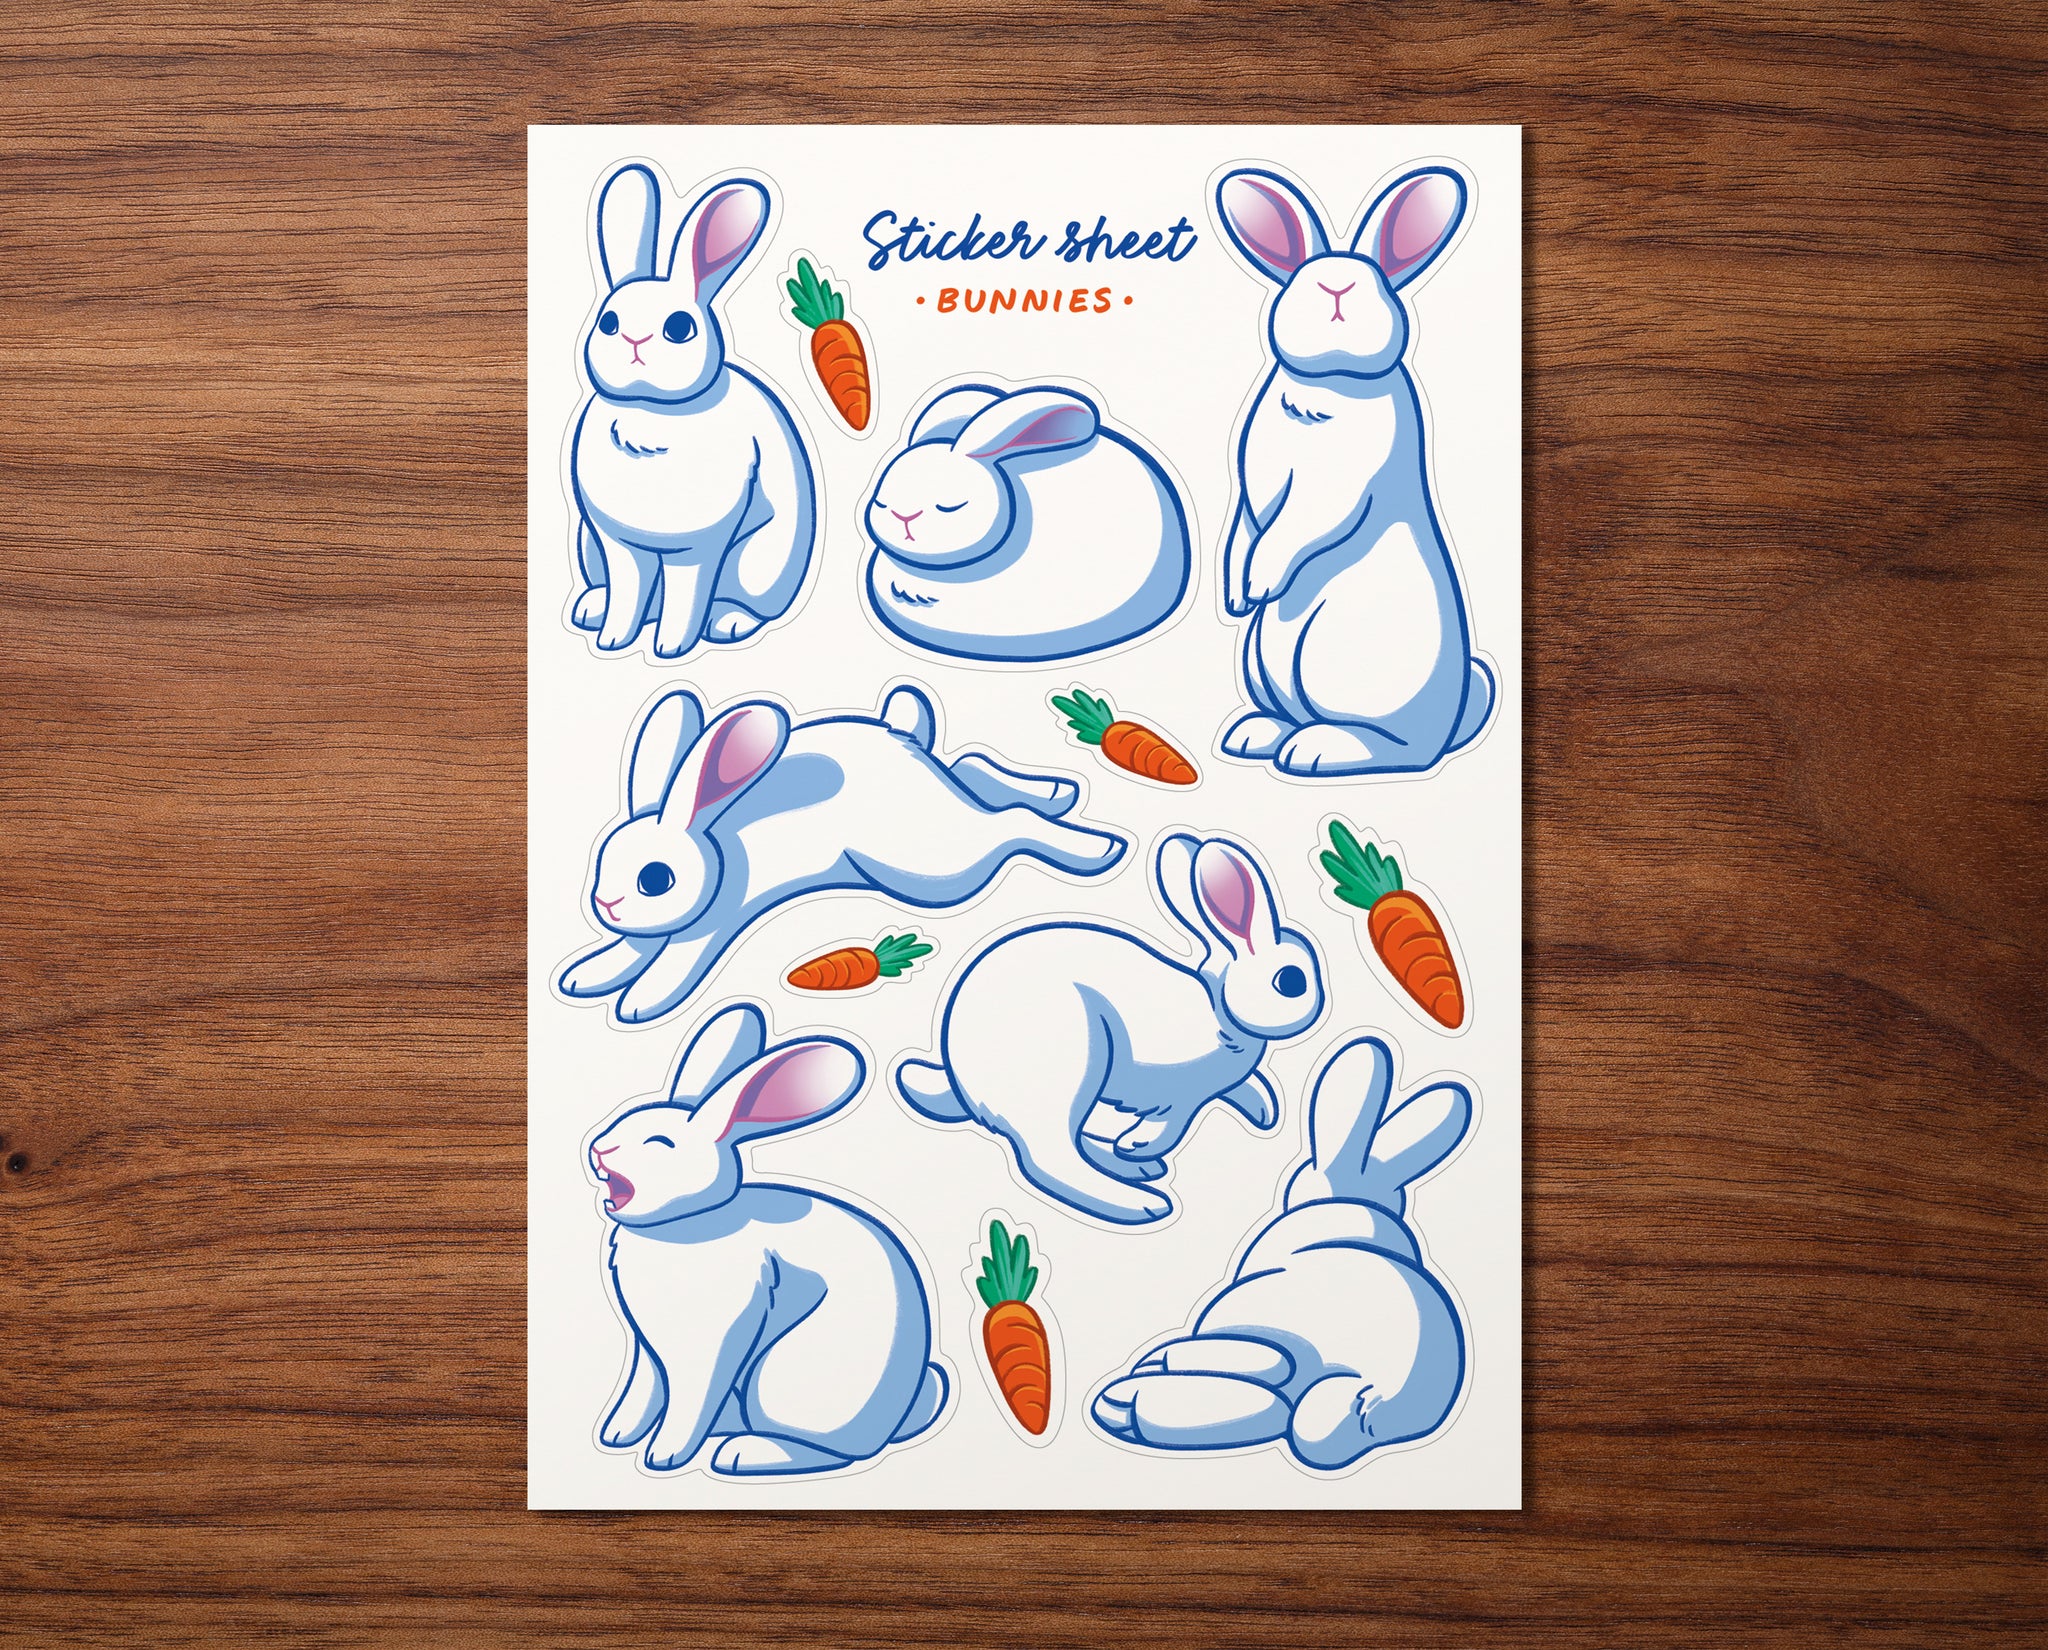 Bunnies and Carrot Sticker Sheet